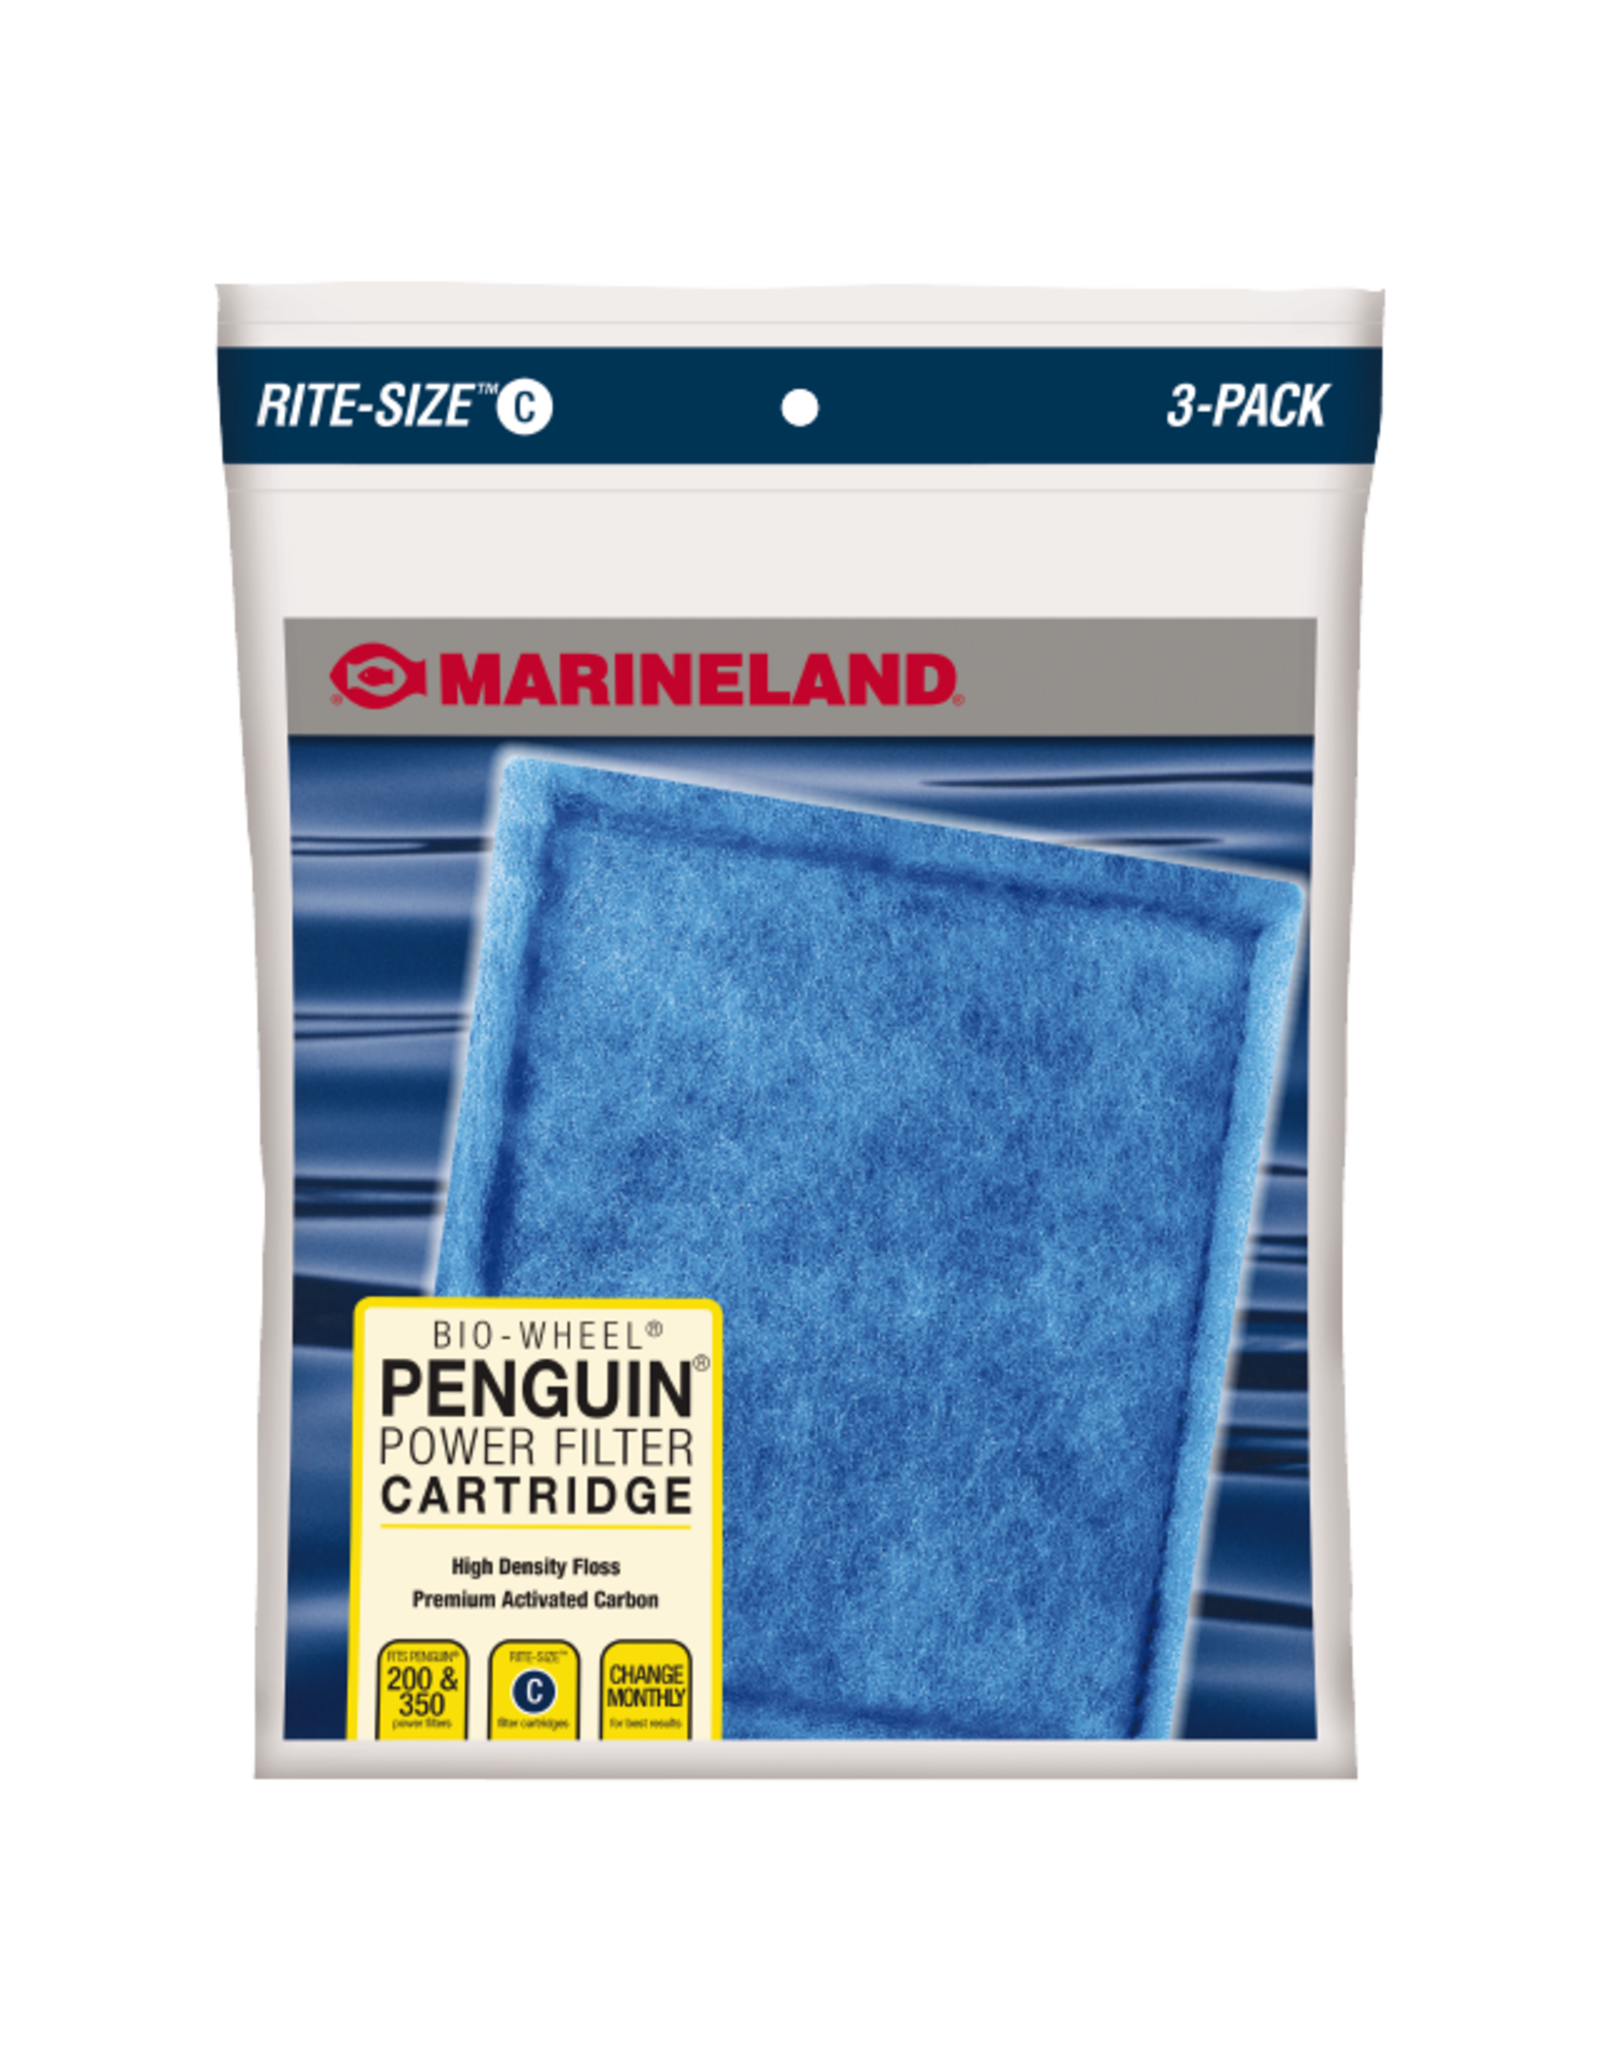 Marineland MARINELAND Rite Size Cartridge